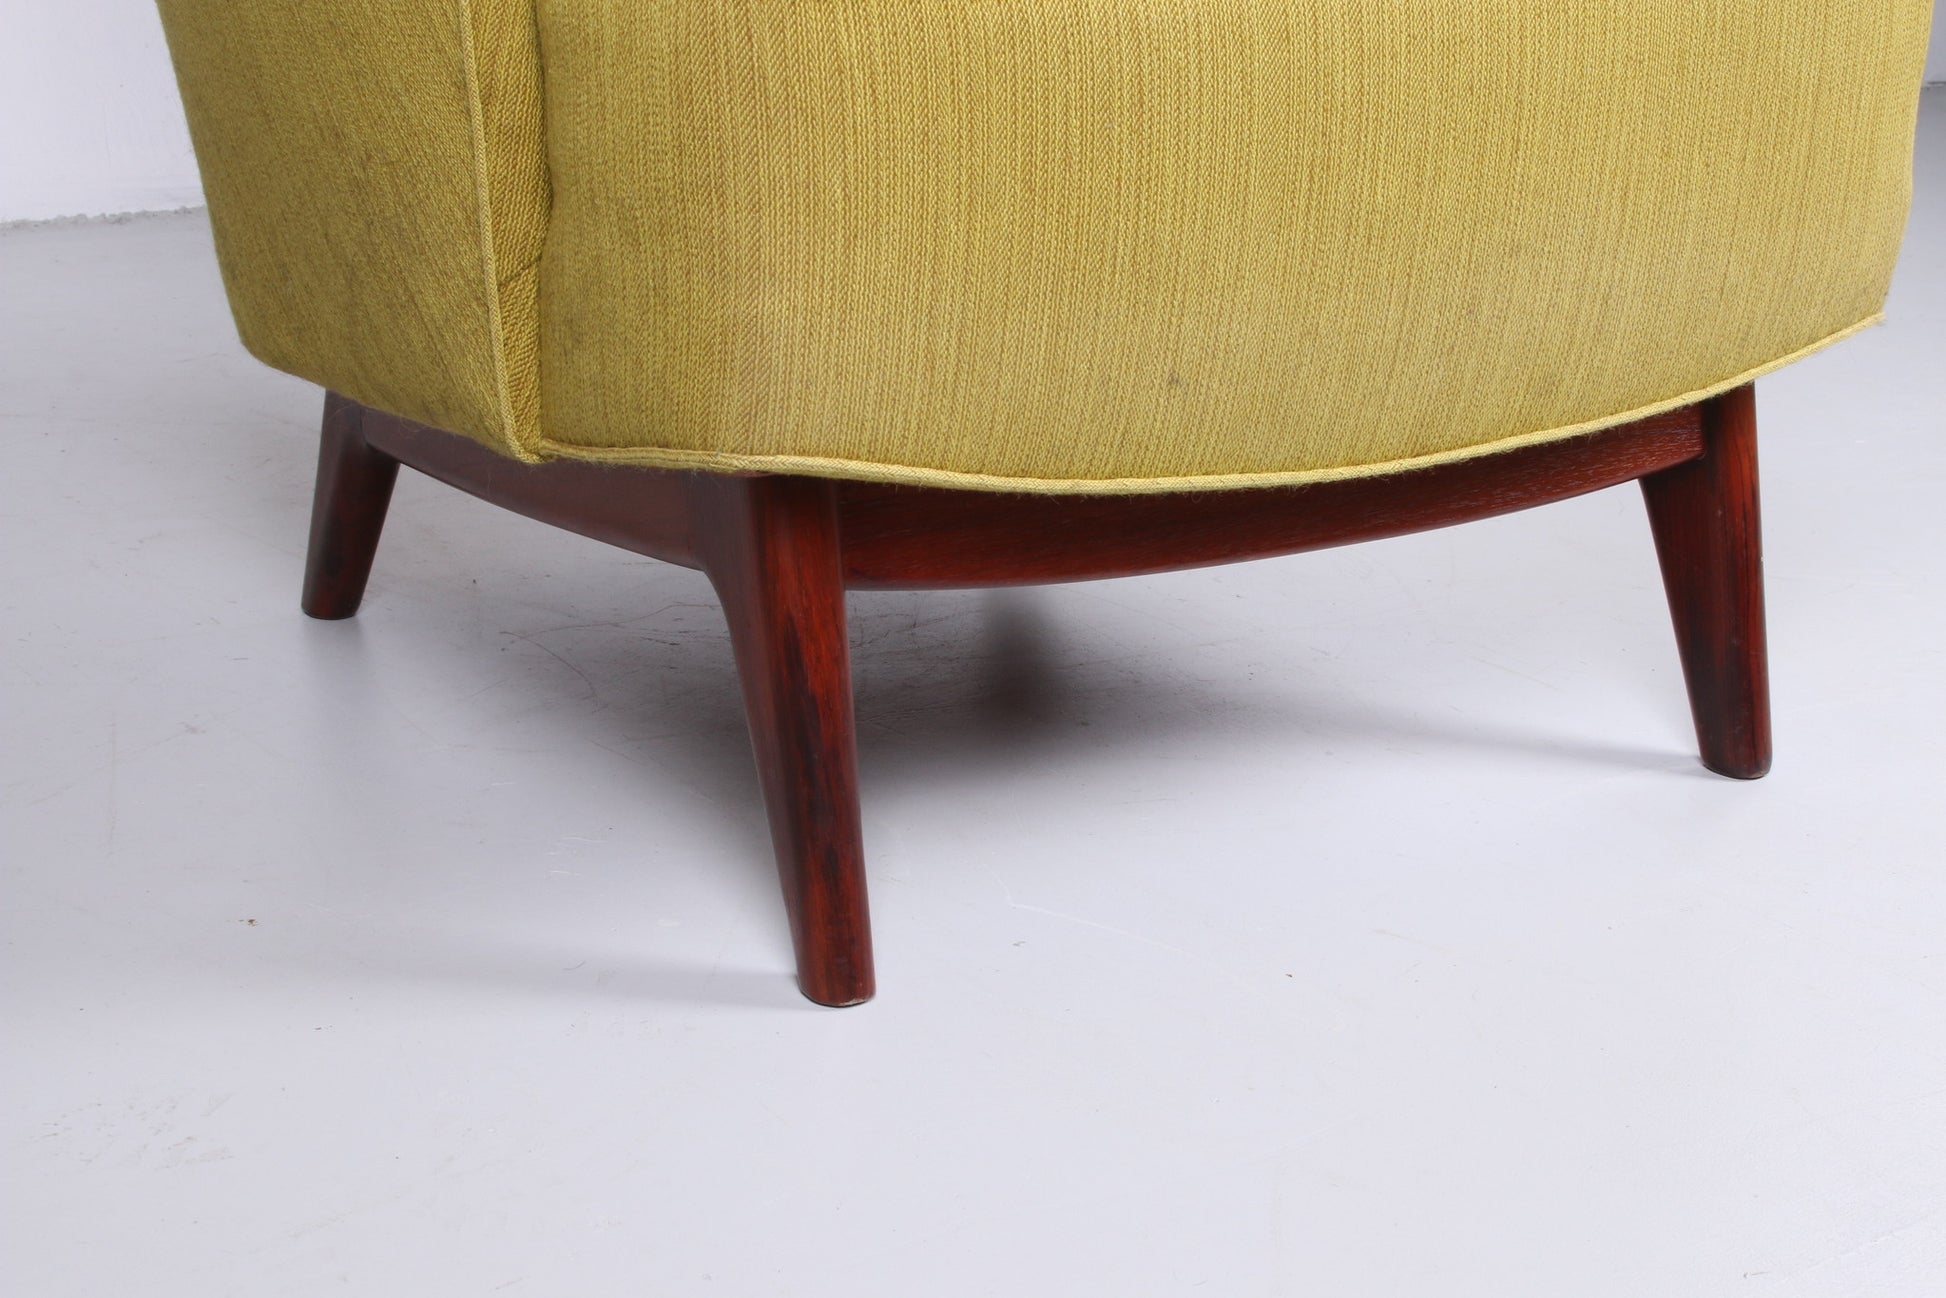 Deense fauteuil met pallisander houten onderstel mosgroen detail stoelpoten